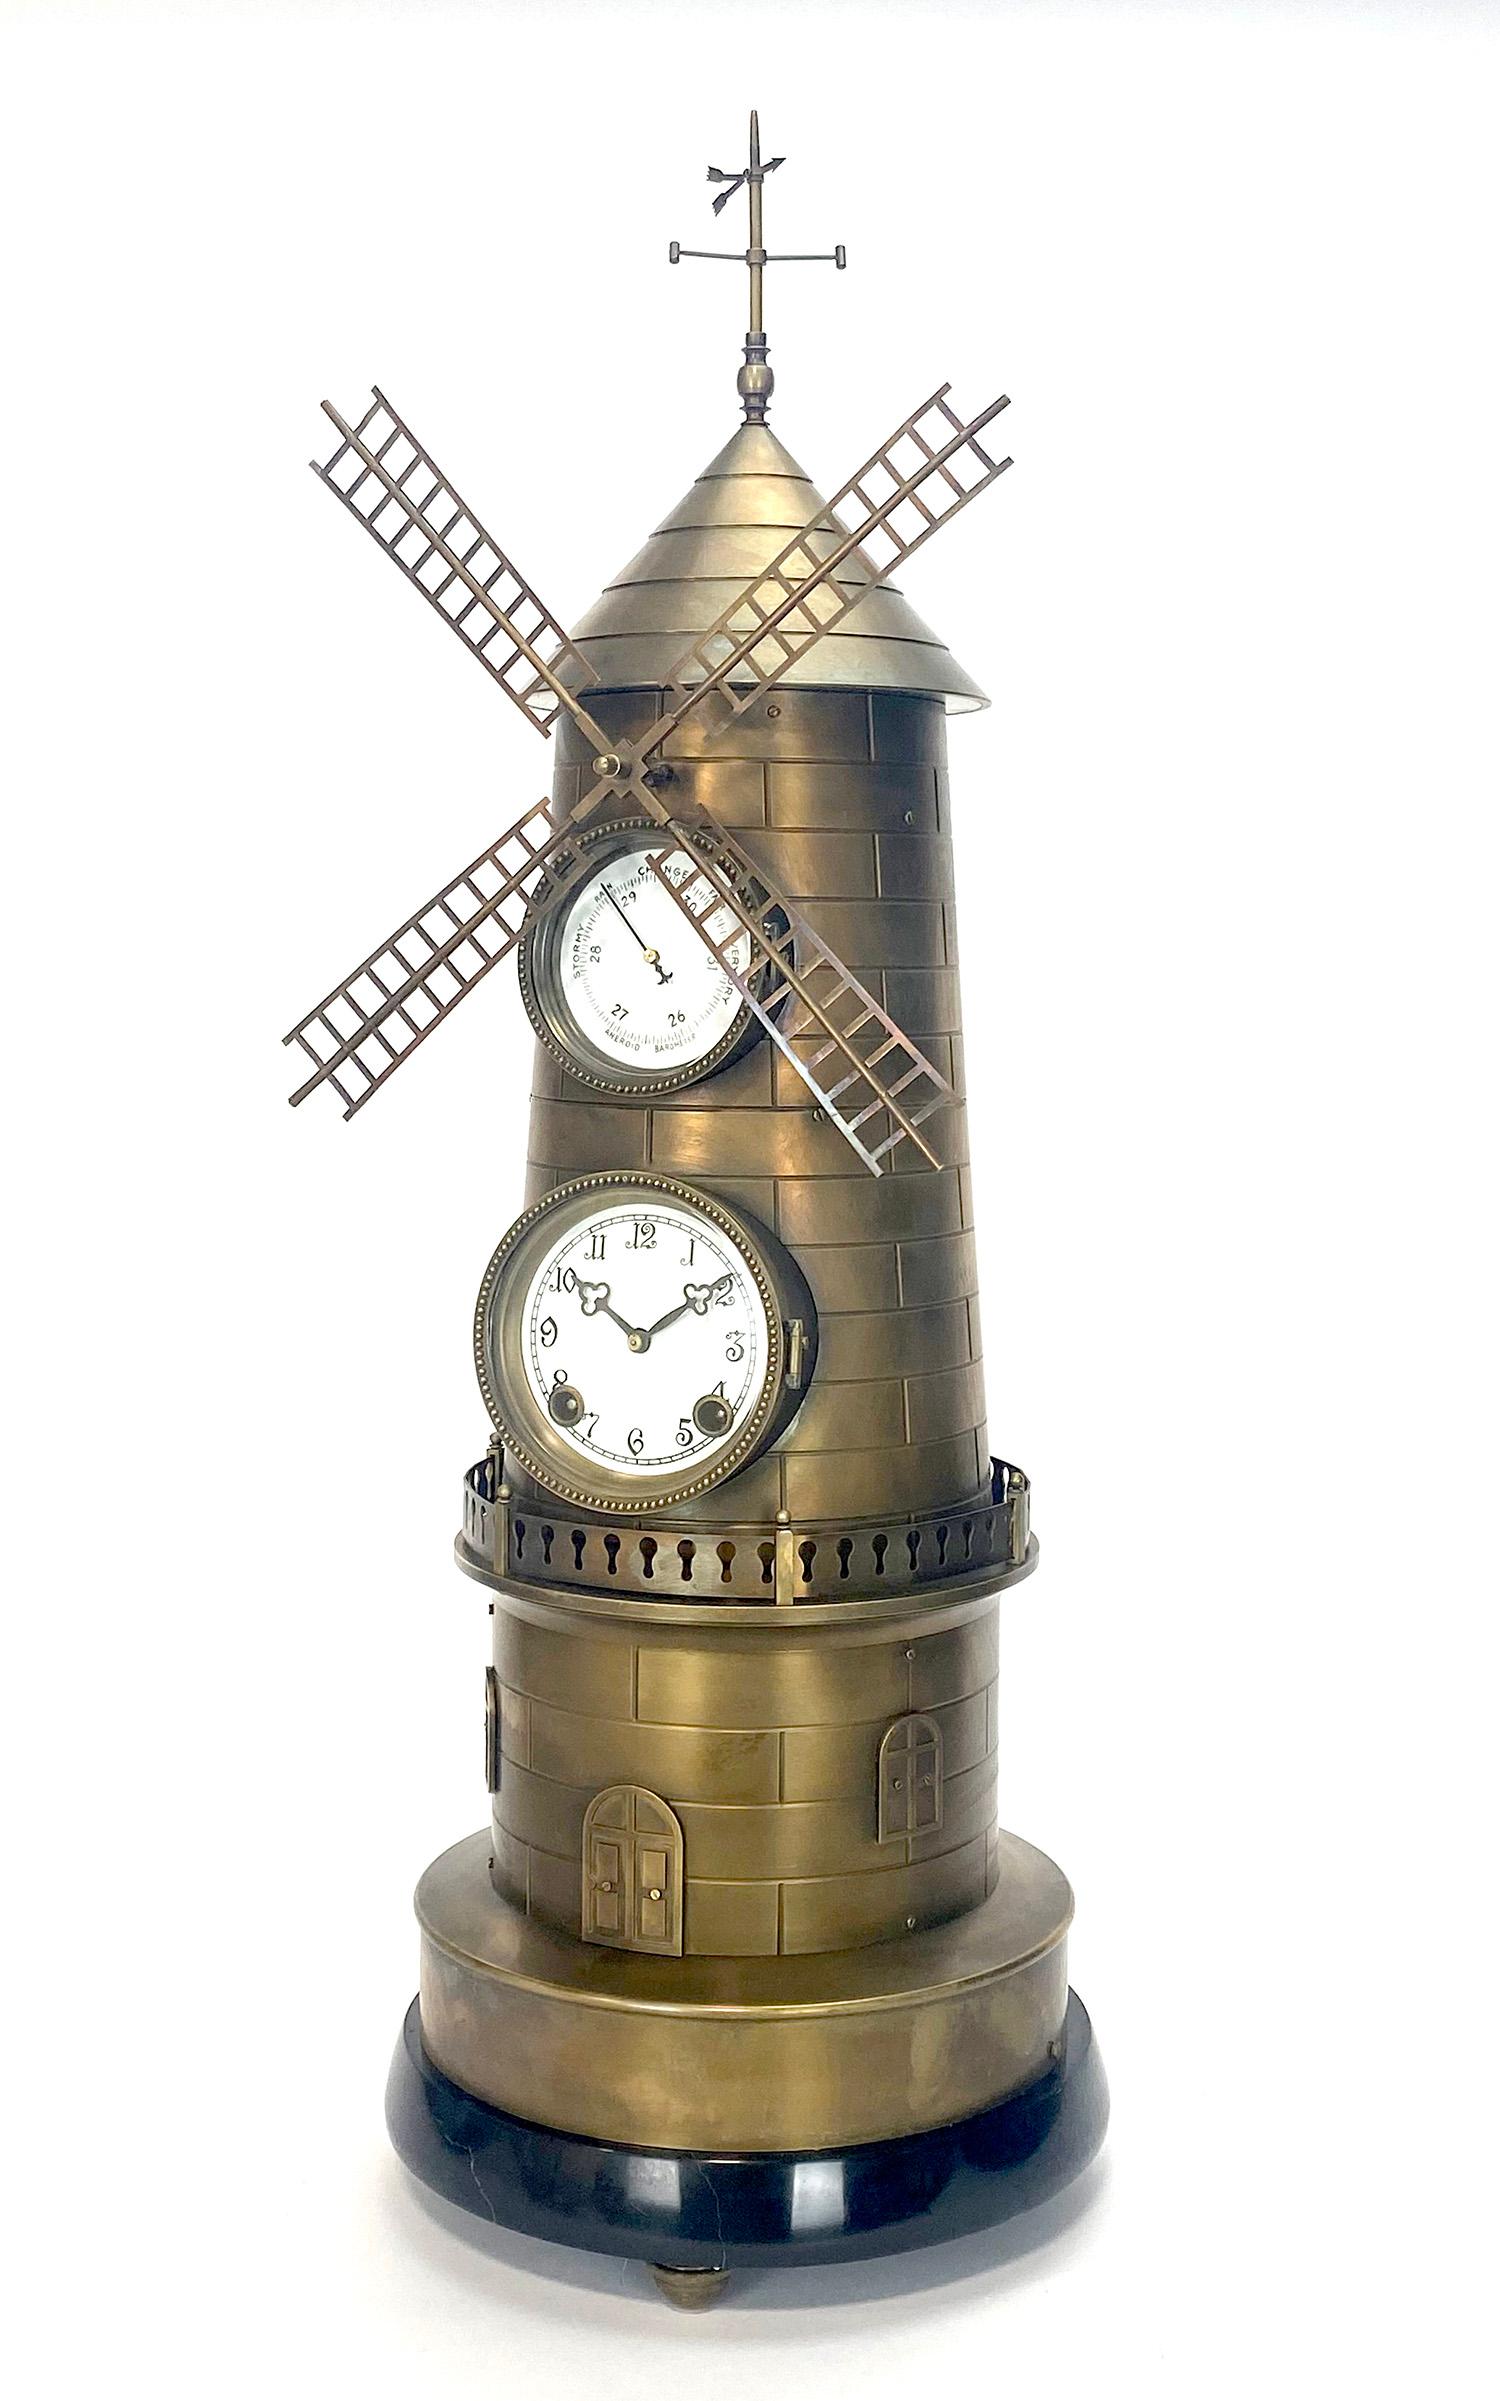 Große französische Stil 8 Tage Messing Automatik Windmühle Industrieuhr w Marmorsockel.

Hier haben wir ein wunderbares Beispiel für die in der französischen Uhrmacherei beliebten Industrieserien. Während die Uhr schlägt, dreht sich die Windmühle,